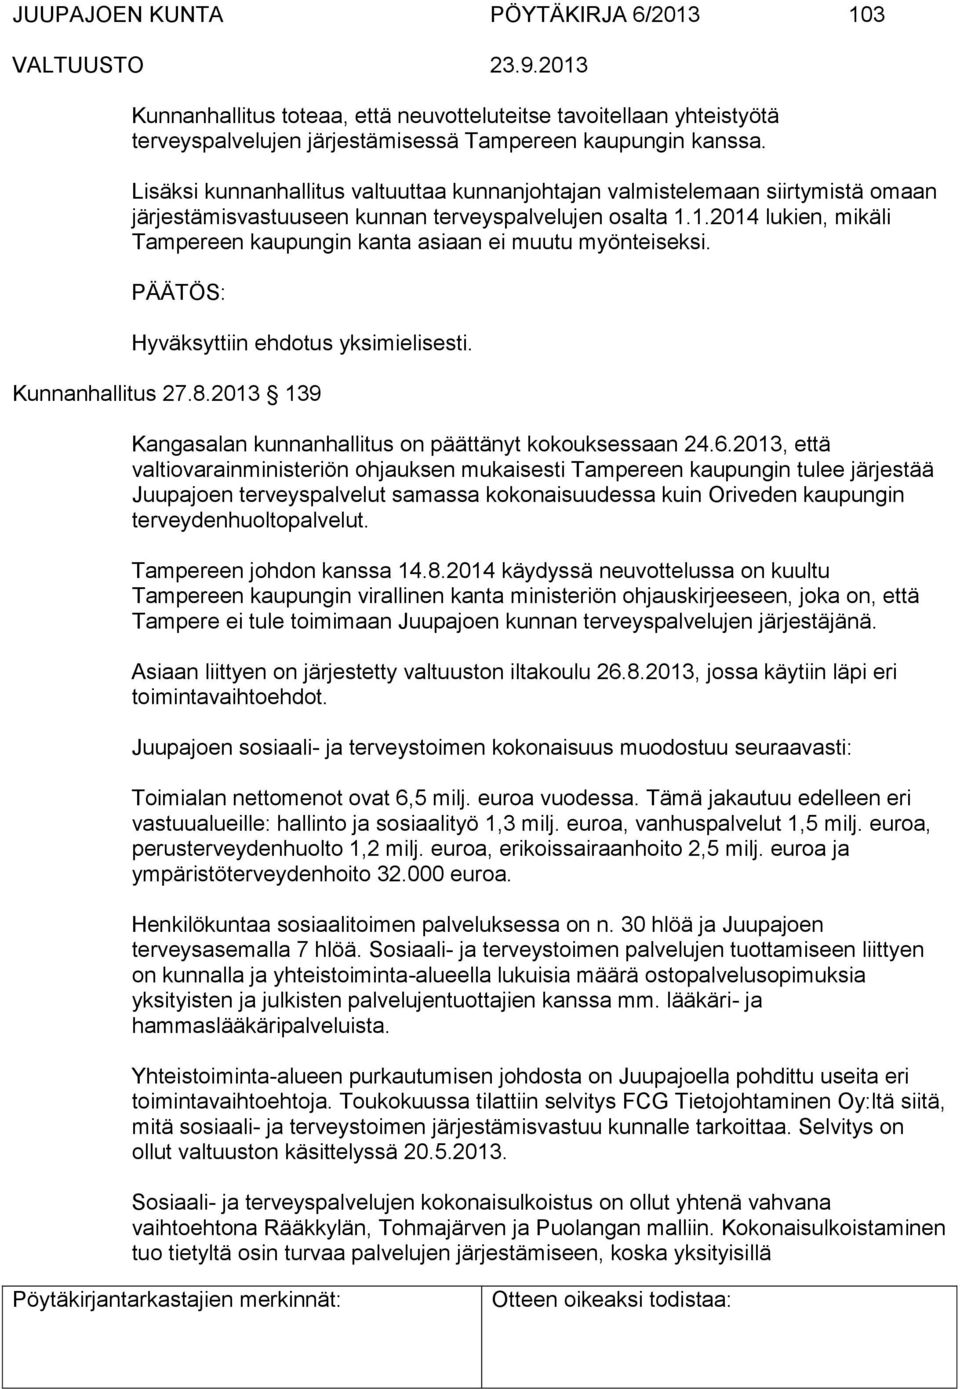 1.2014 lukien, mikäli Tampereen kaupungin kanta asiaan ei muutu myönteiseksi. Hyväksyttiin ehdotus yksimielisesti. Kunnanhallitus 27.8.2013 139 Kangasalan kunnanhallitus on päättänyt kokouksessaan 24.